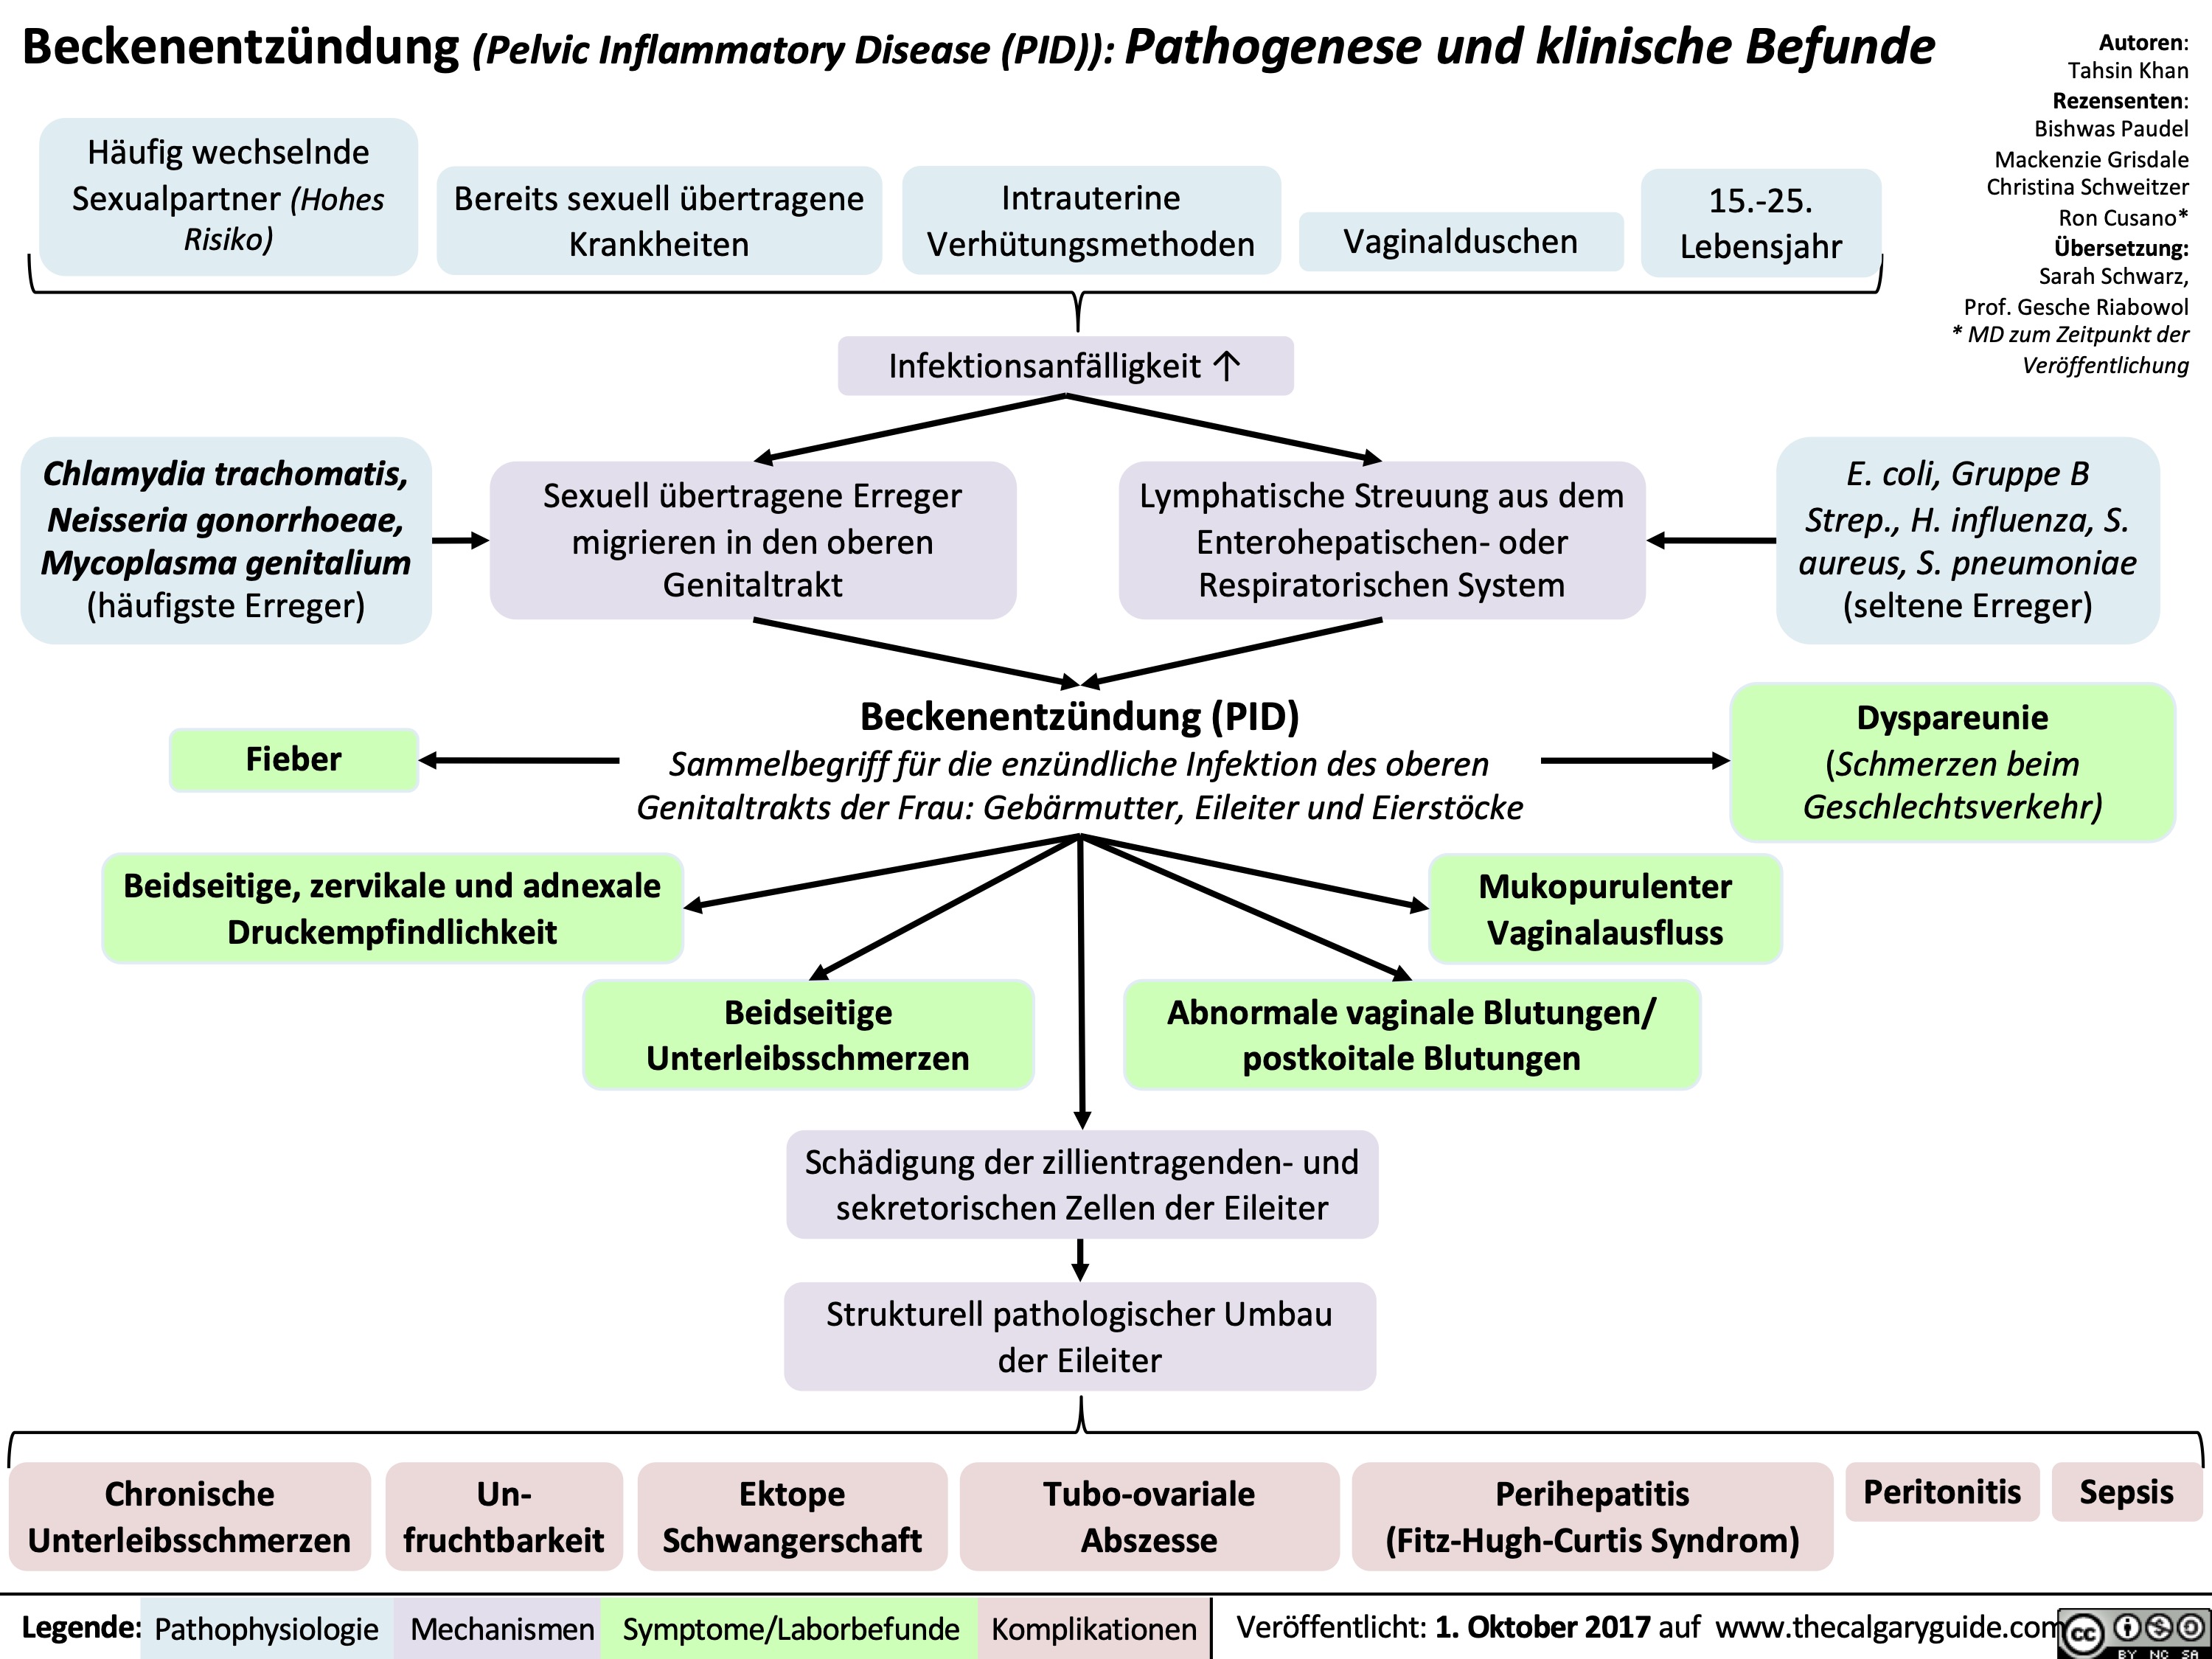 Beckenentzündung (Pelvic Inflammatory Disease (PID)): Pathogenese und klinische Befunde